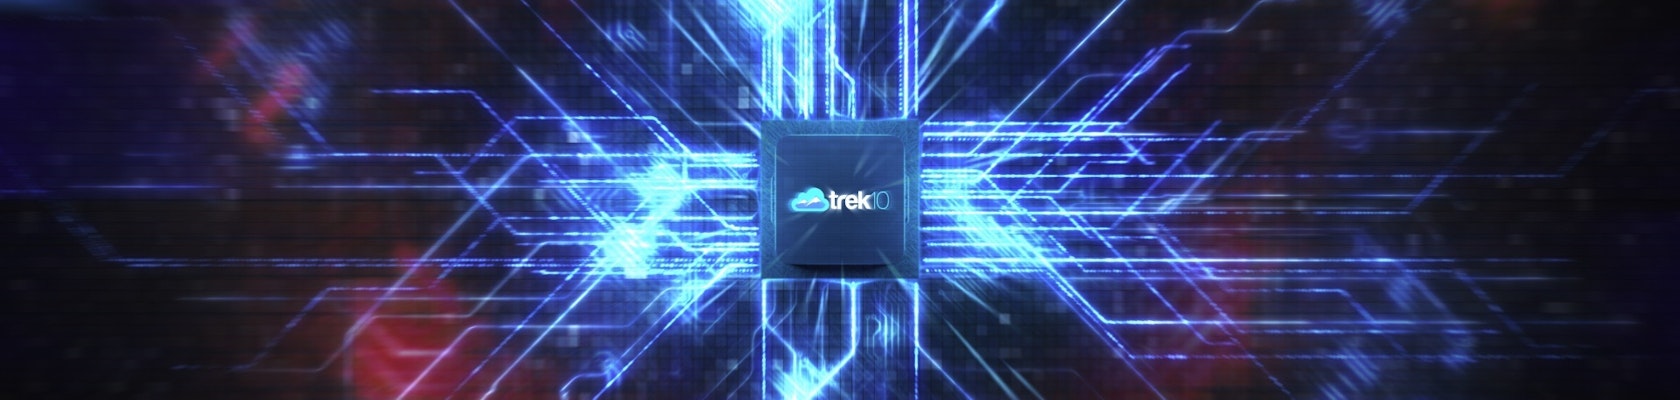 Trek10 logo sting image 5